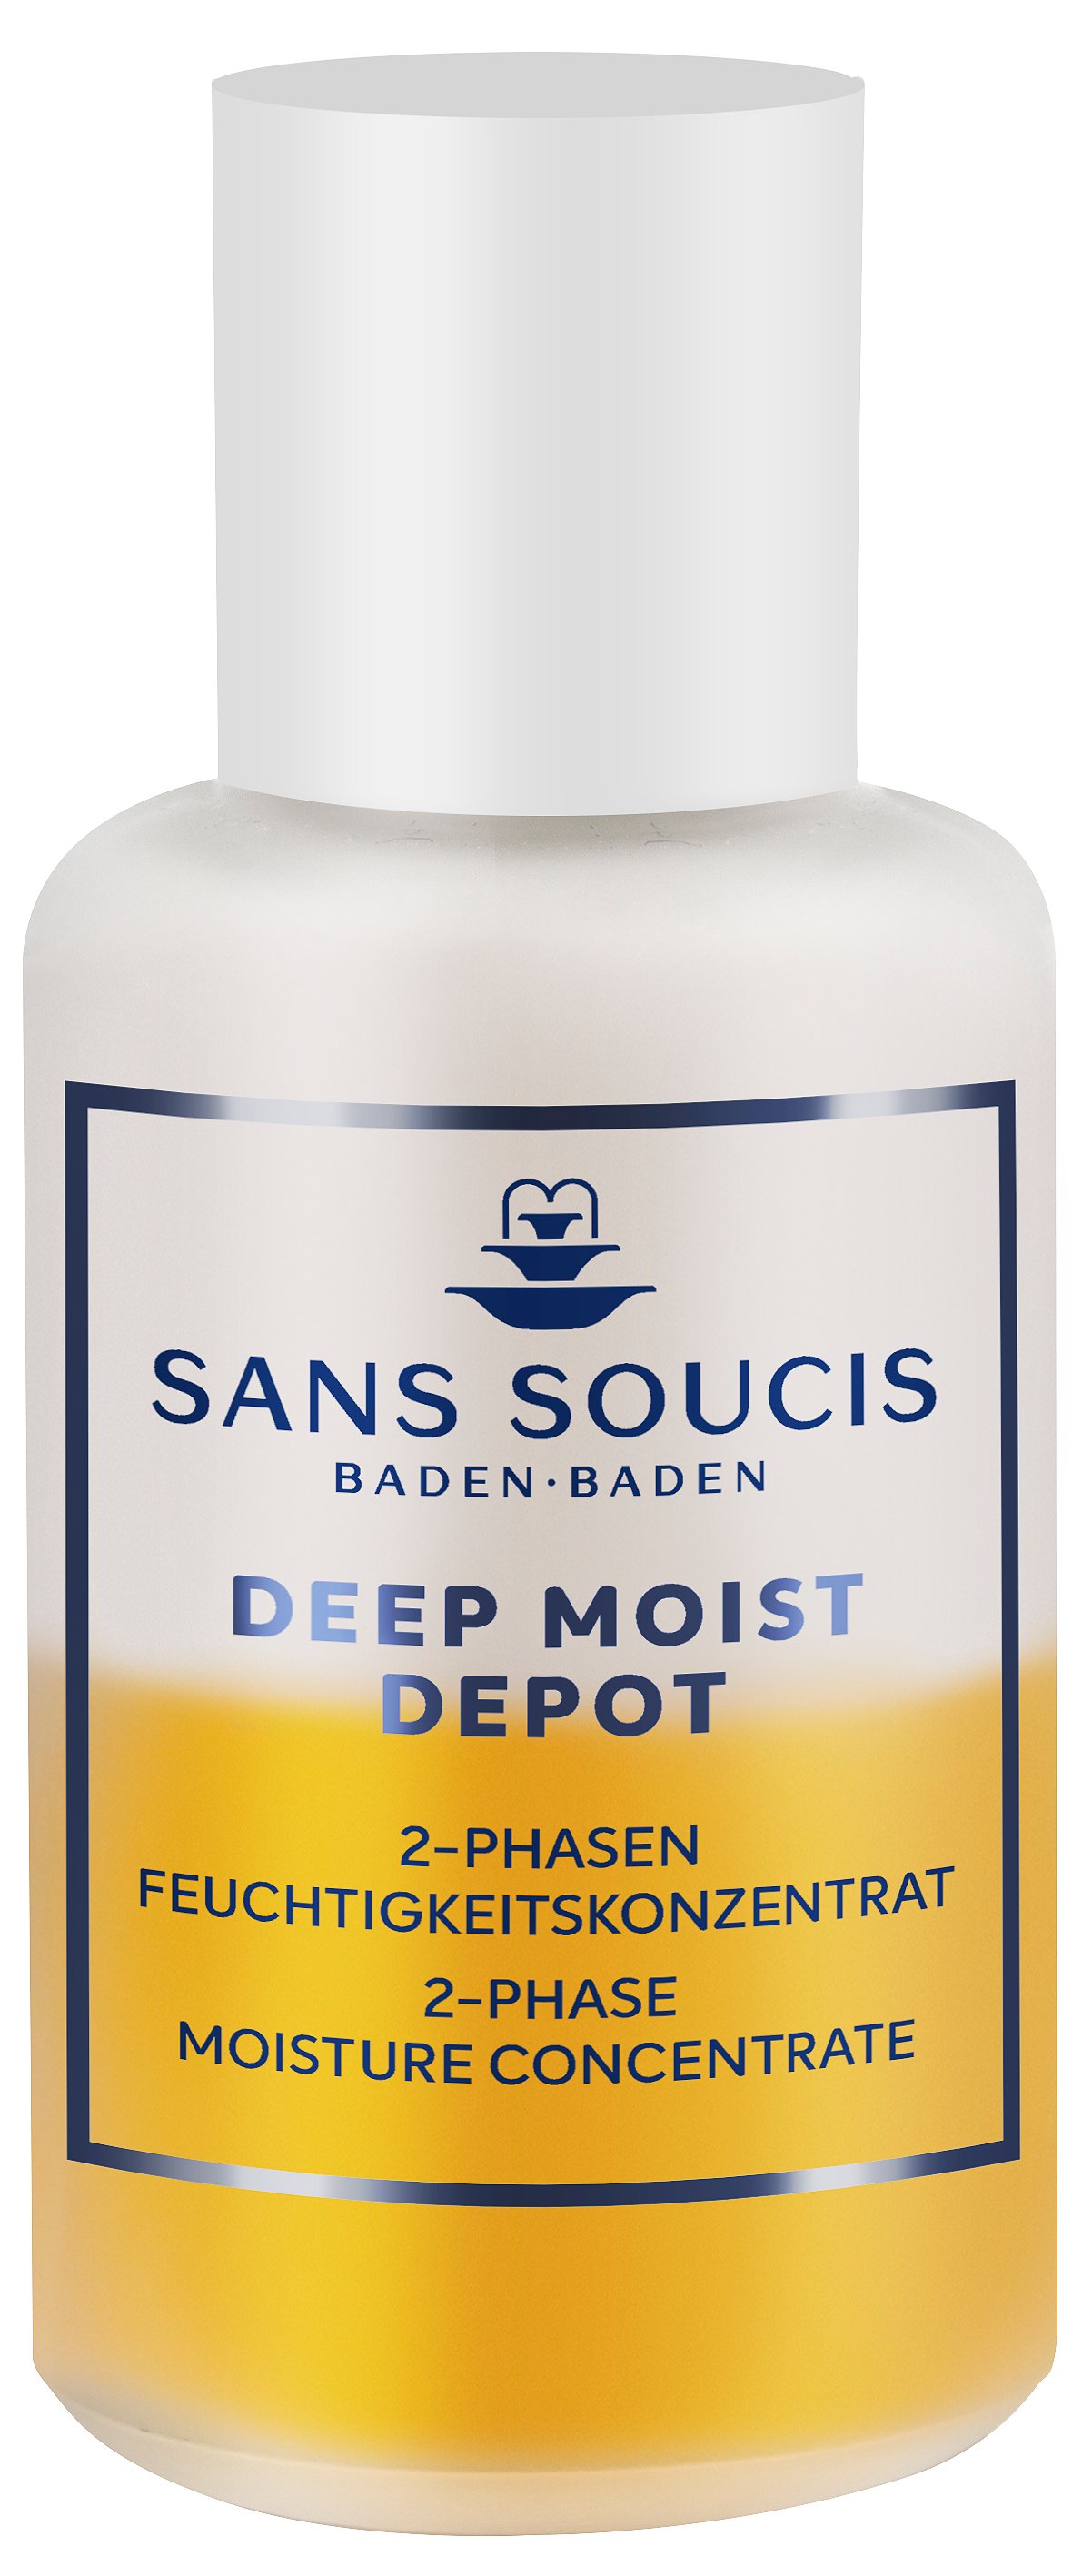 Sans Soucis Deep Moist Depot 2-phase Moisture Concentrate 30 ml